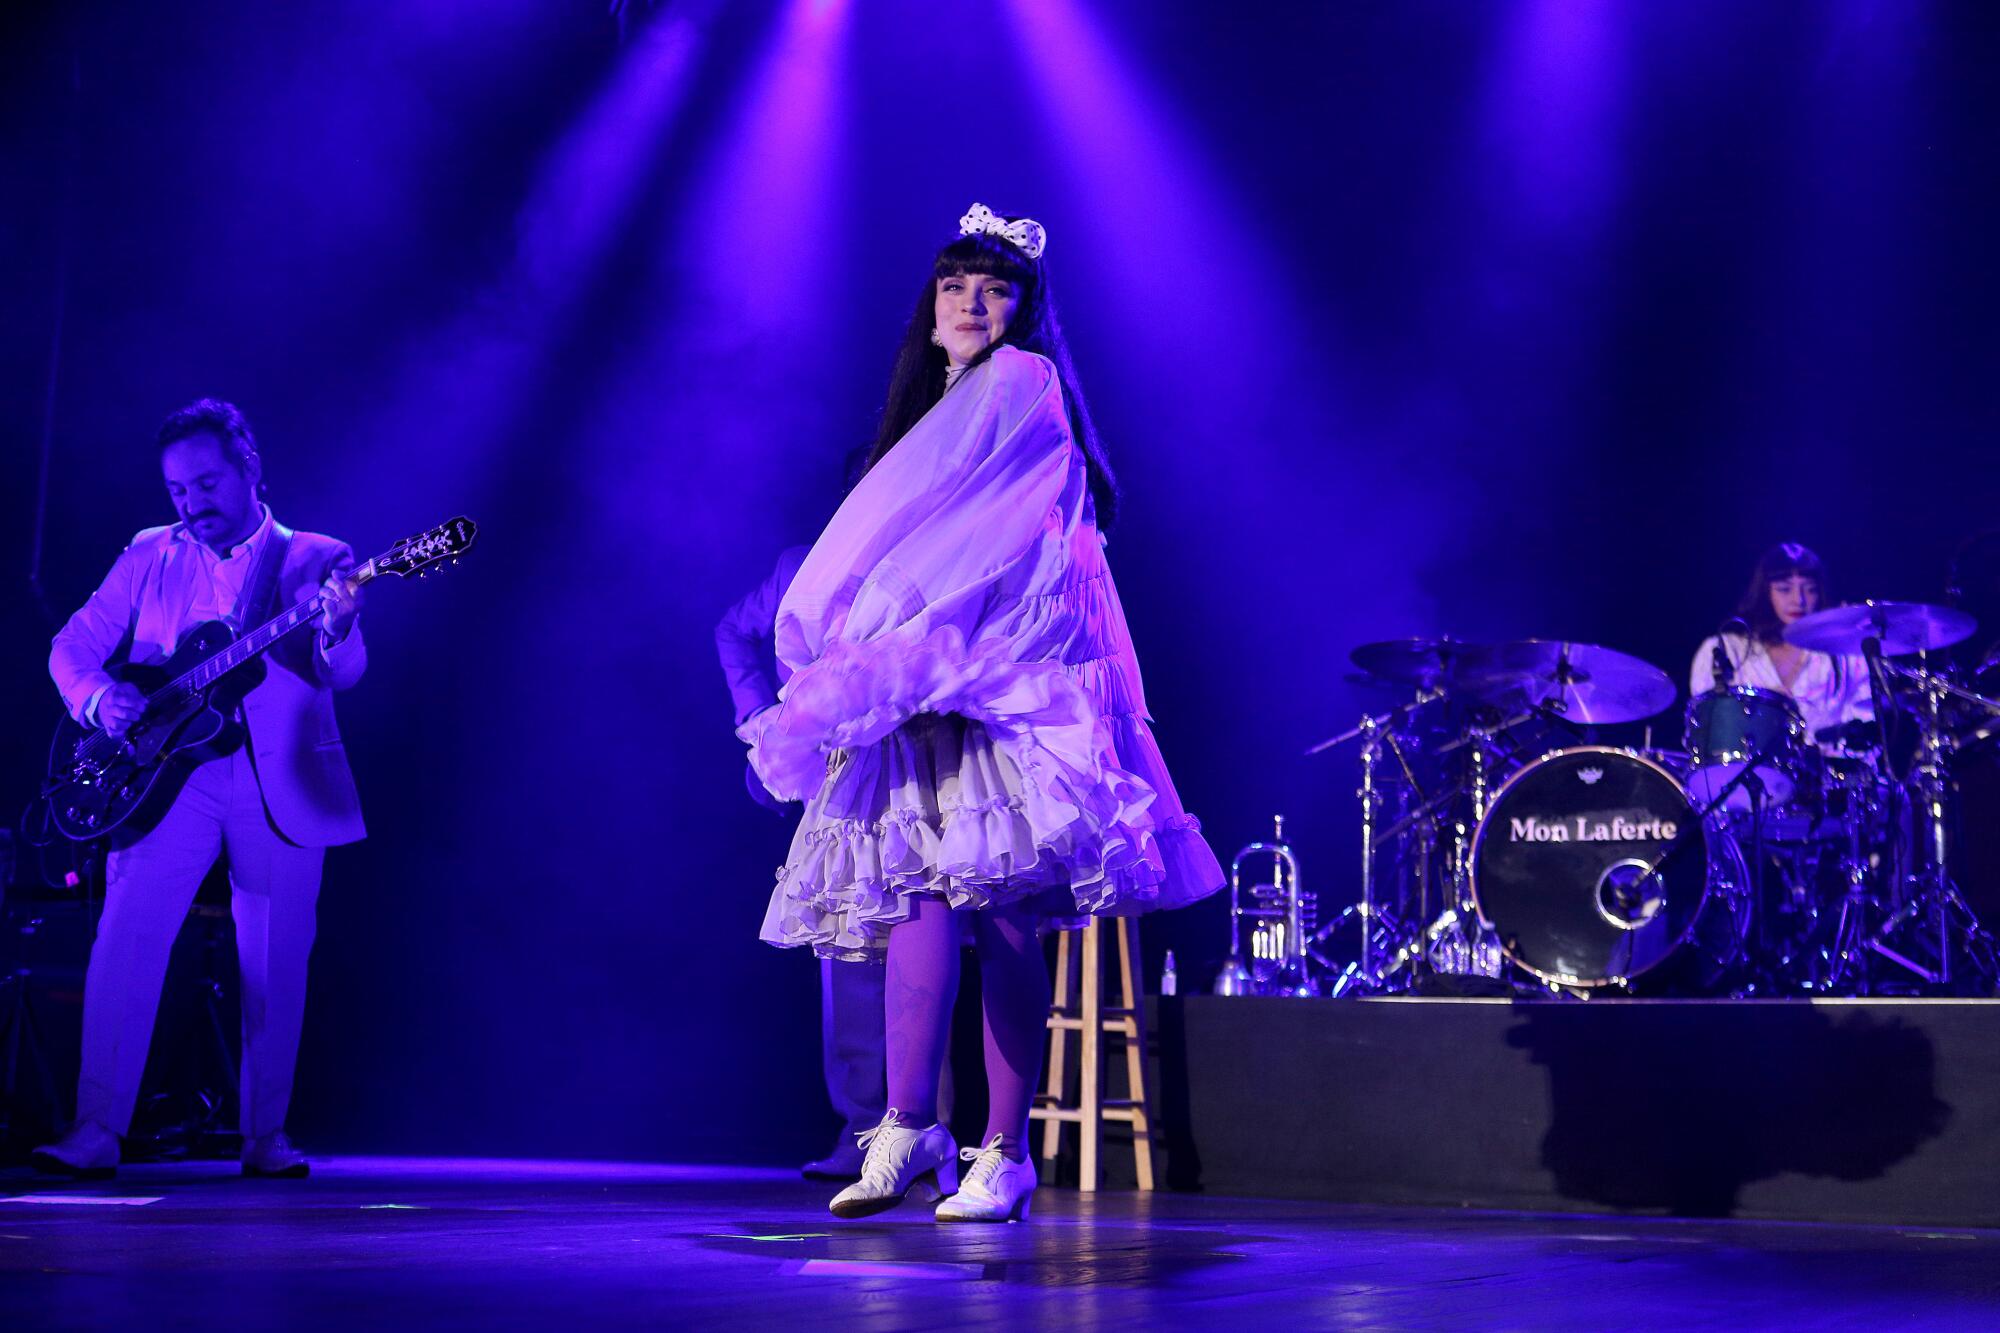 La cantante y compositora chilena Mon Laferte se presenta ante una gran multitud en House of Blues en Anaheim